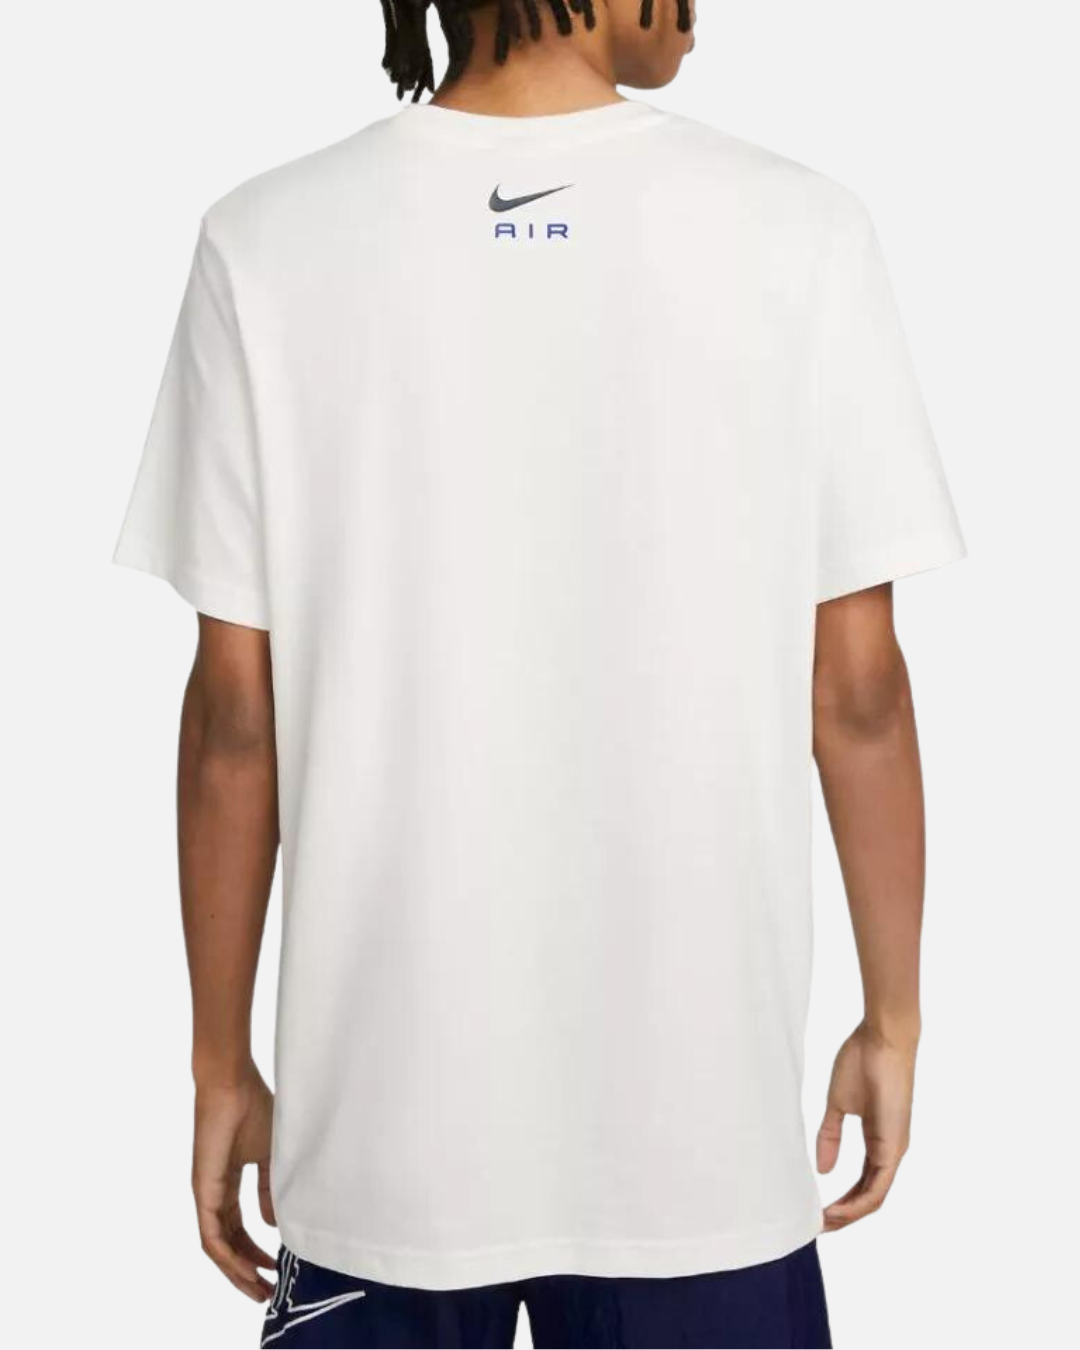 Nike Air Graphic T-Shirt - White/Black/Blue